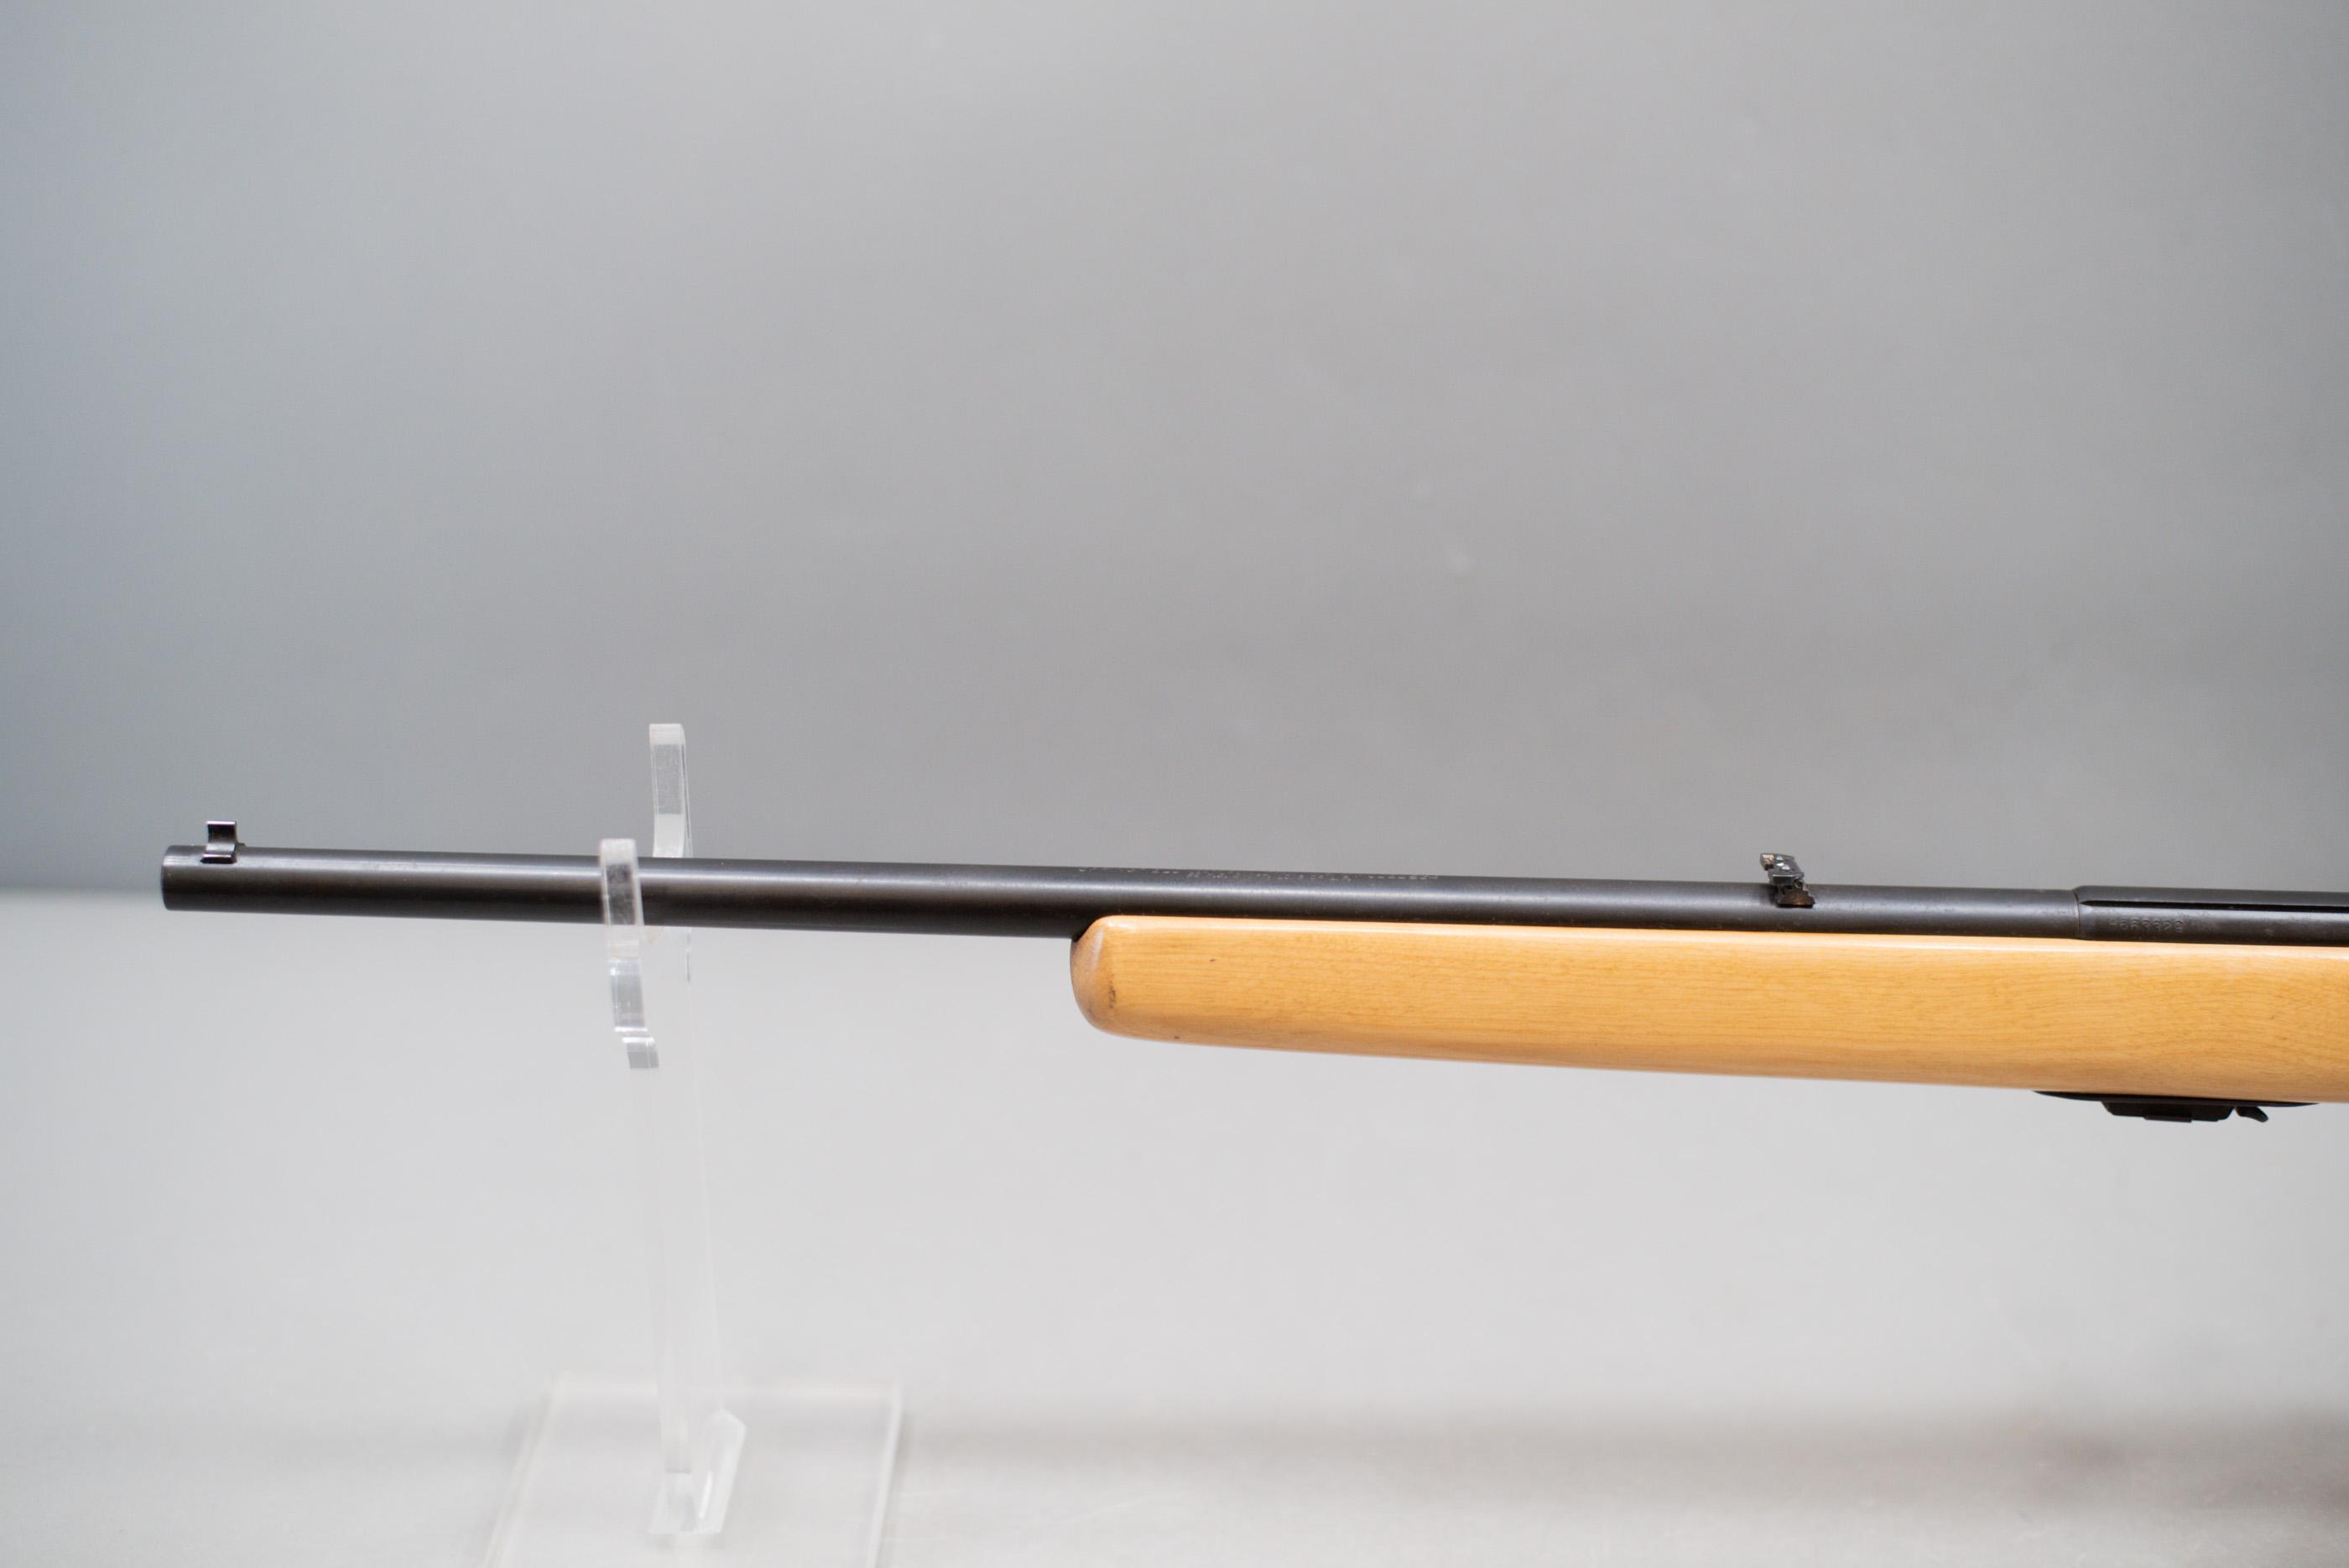 (R) Springfield Model 284 .22S.L.LR Rifle